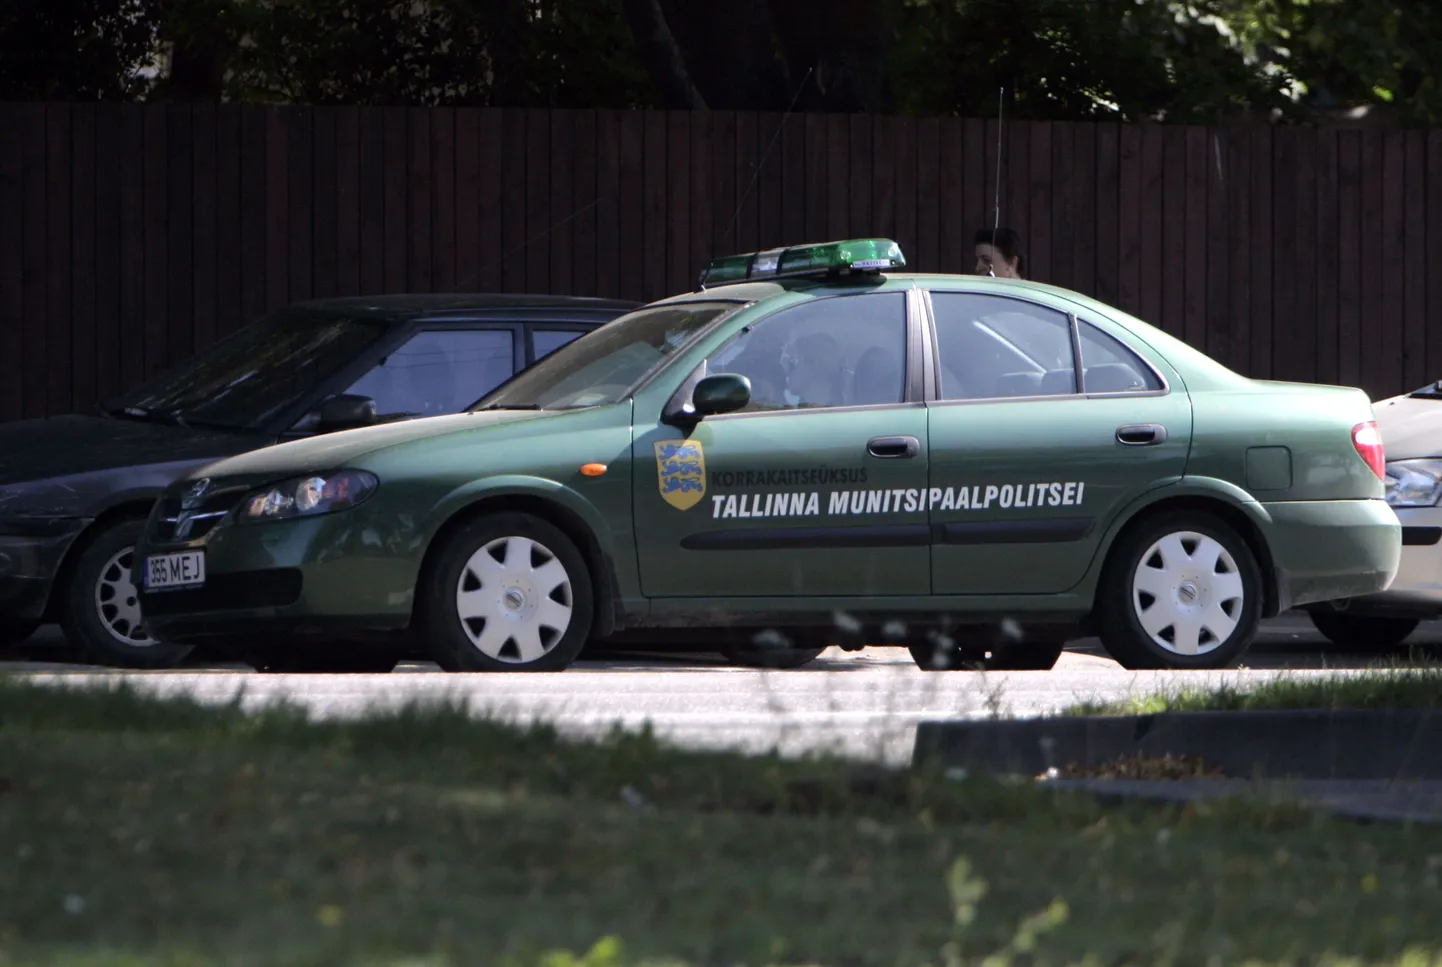 Машина таллиннской муниципальной полиции.